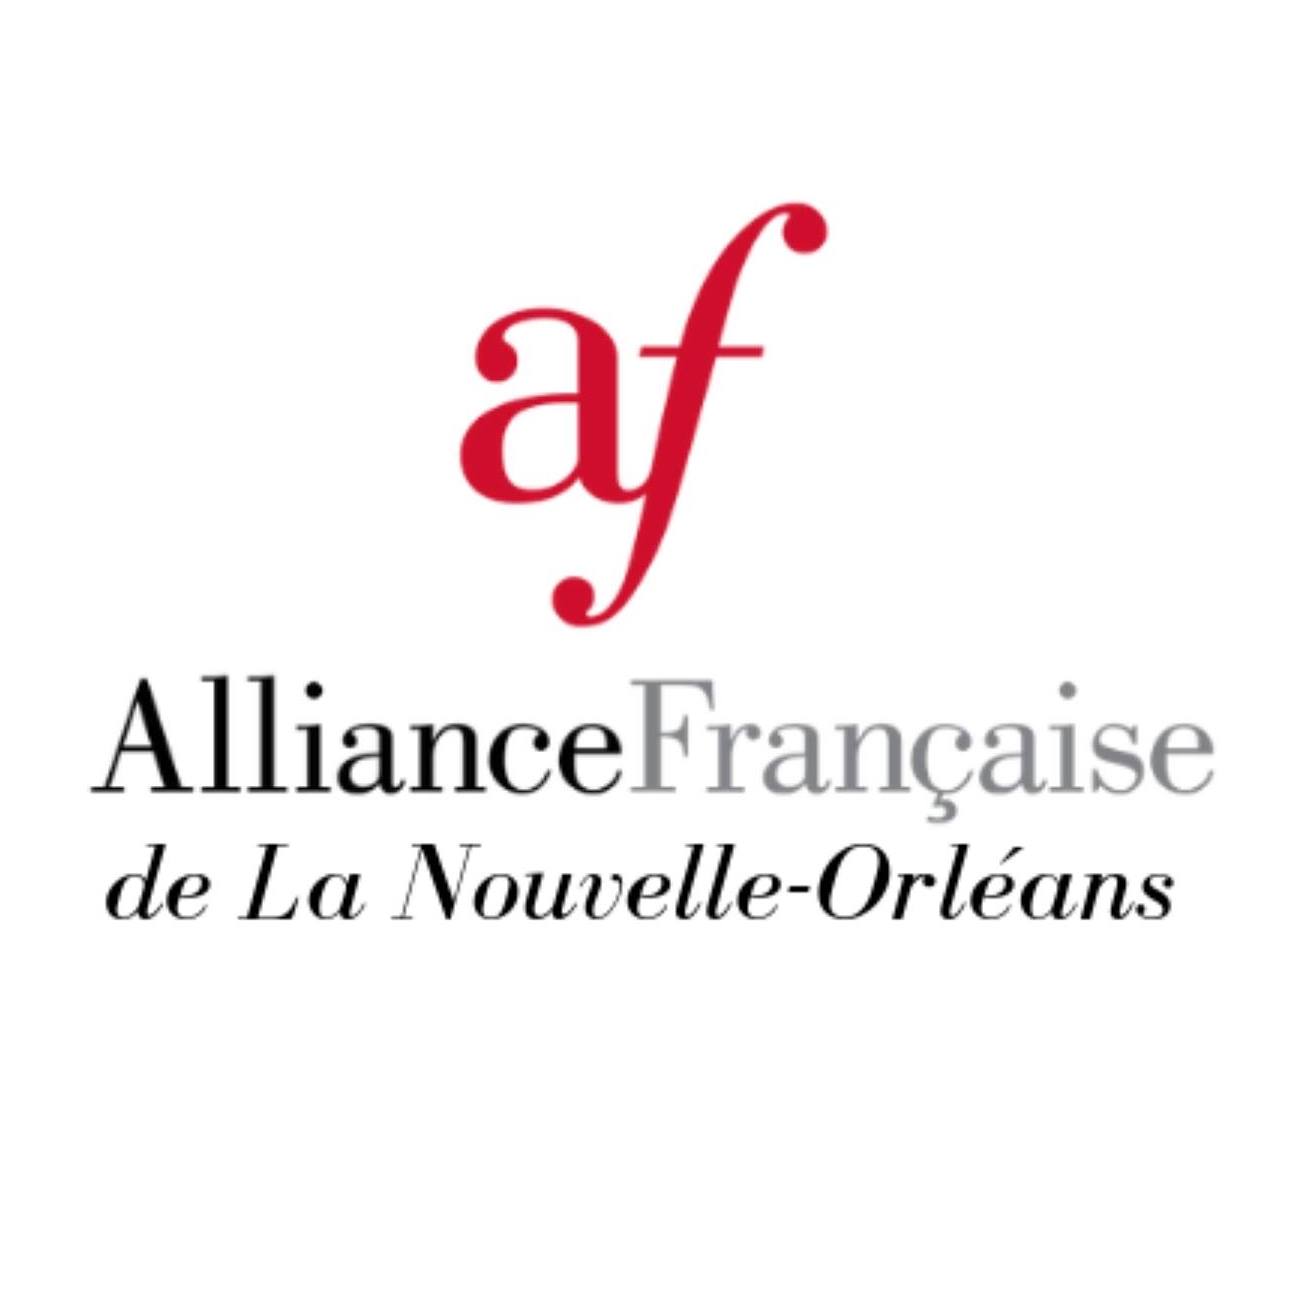 French Organization in Louisiana - Alliance Francaise de la Nouvelle Orléans